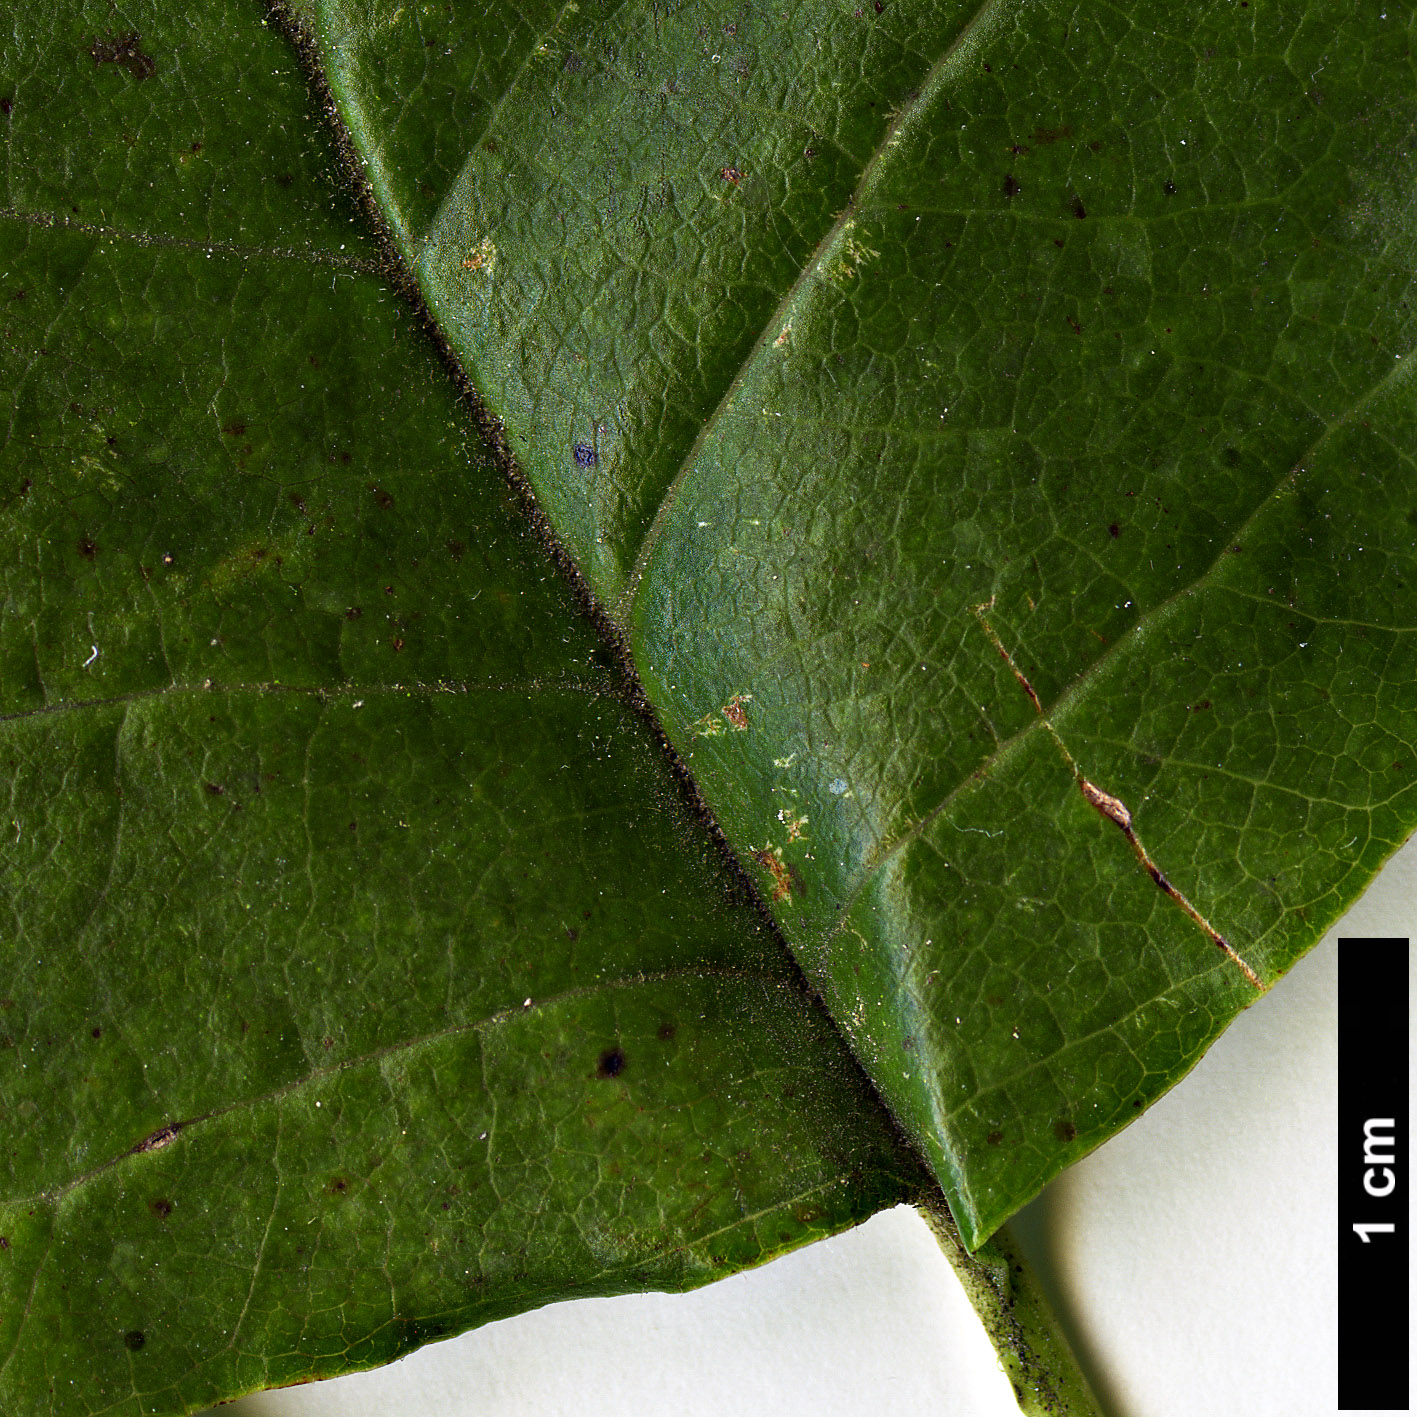 High resolution image: Family: Magnoliaceae - Genus: Magnolia - Taxon: acuminata